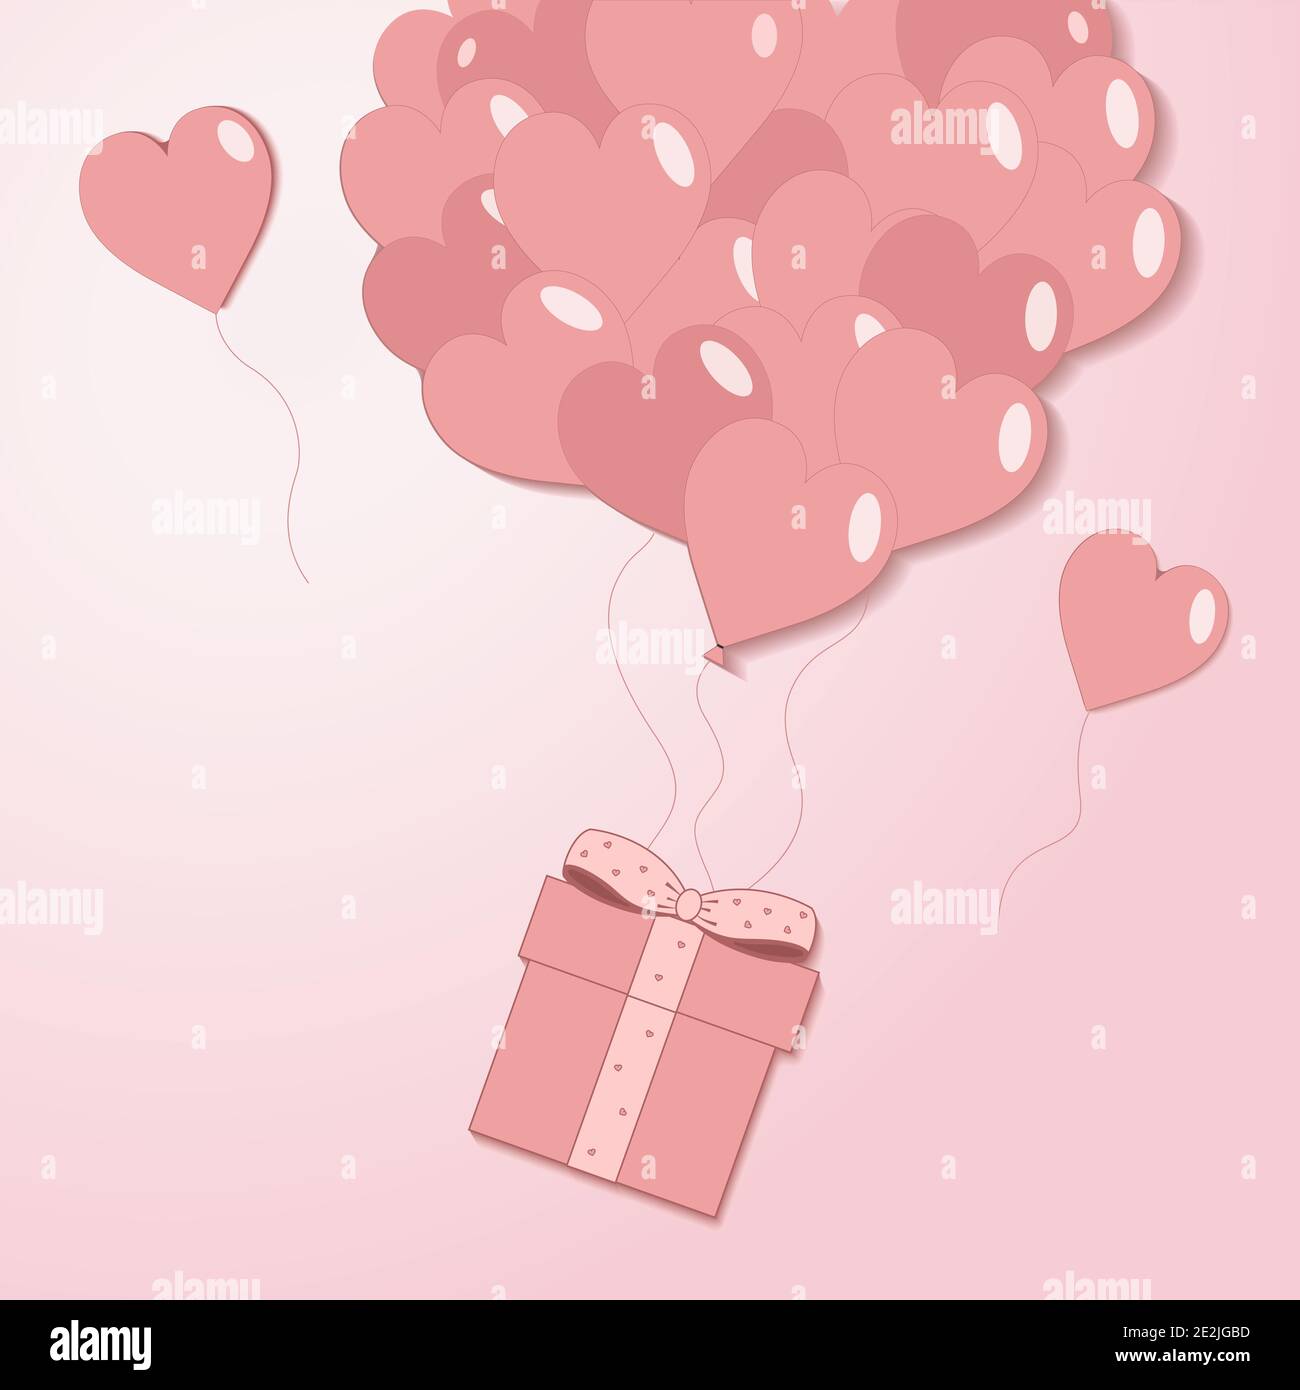 Valentines Hearts Ballon mit Geschenkbox Postkarte auf hellrosa Hintergrund. Liebe und Urlaub Symbole in Form von Herzen für Happy Women's, Mother's, Vale Stock Vektor